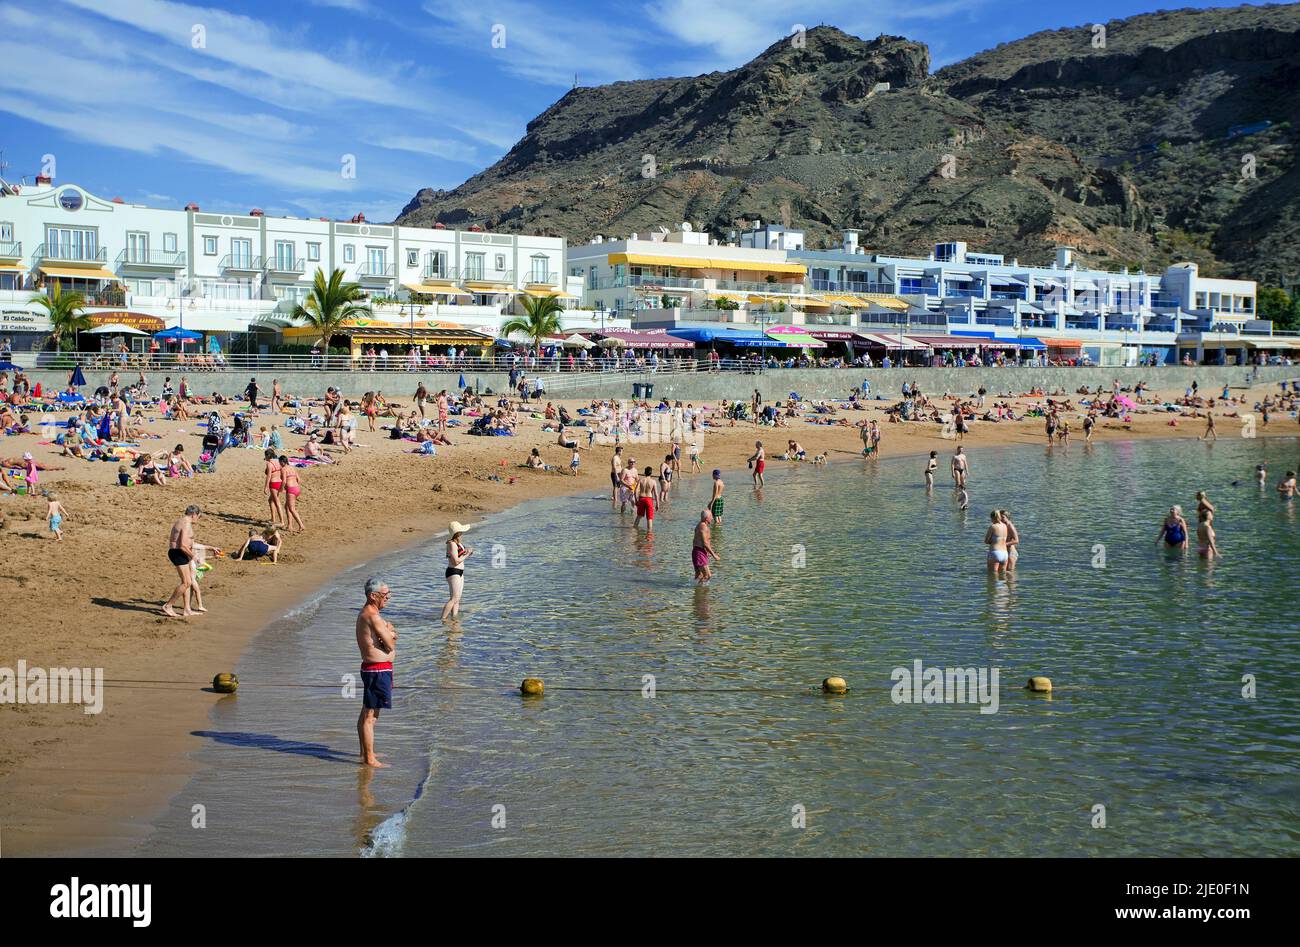 Plage de baignade de Puerto de Mogan, Gran Canaria, îles Canaries, Espagne, Europe Banque D'Images